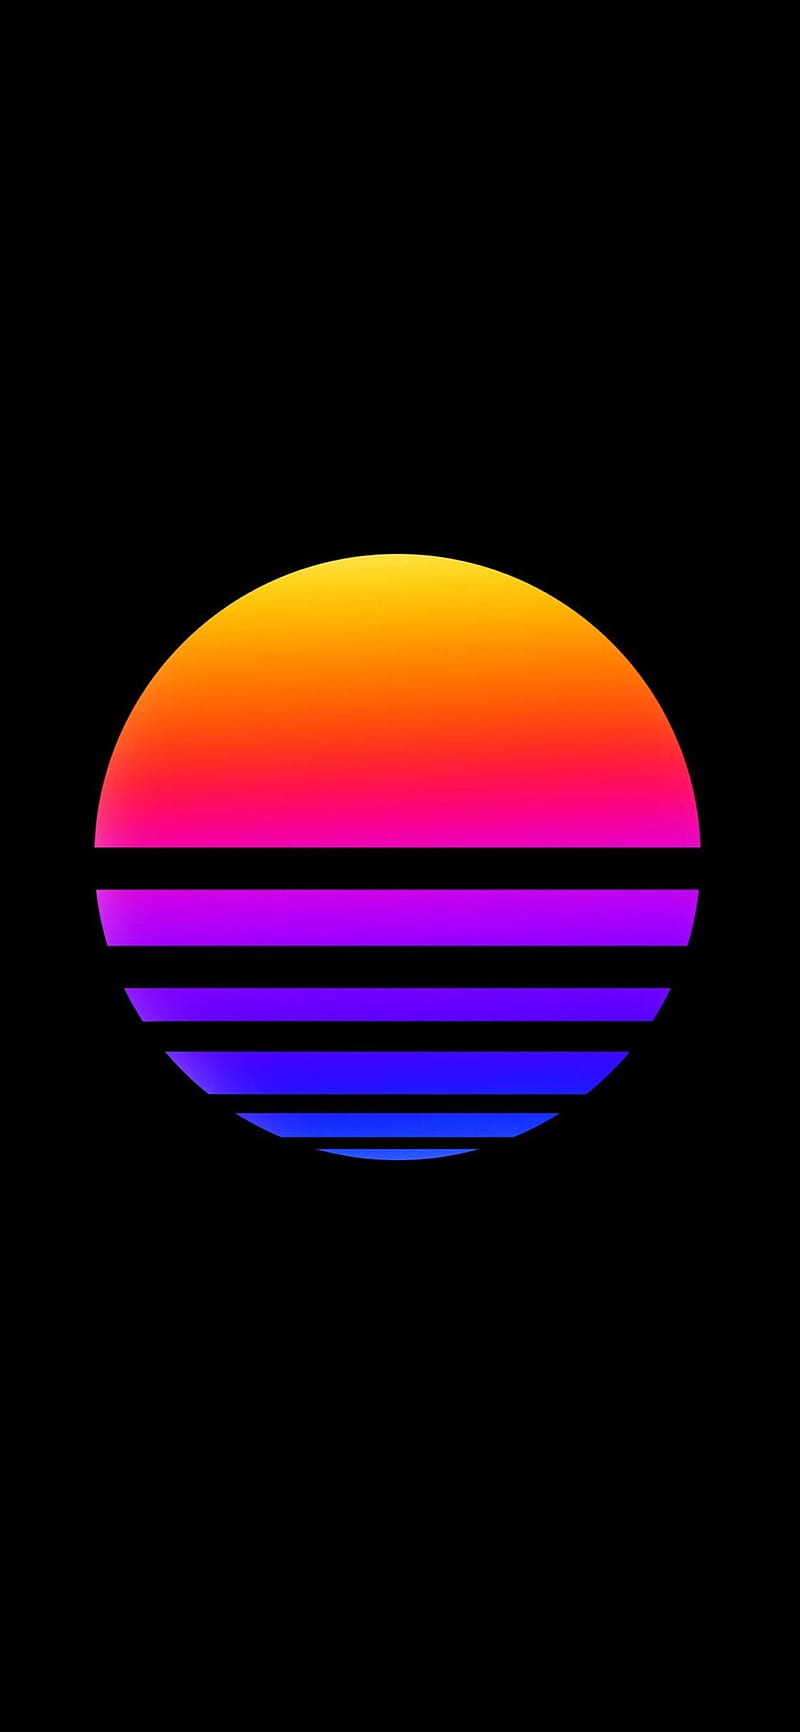 Hình nền Retro Sun mang lại nét đậm chất thập niên 80 với đường viền Neon và sắc màu rực rỡ trên màn hình của bạn. Không chỉ đẹp mắt mà còn mang đến cảm giác tươi vui, năng động.